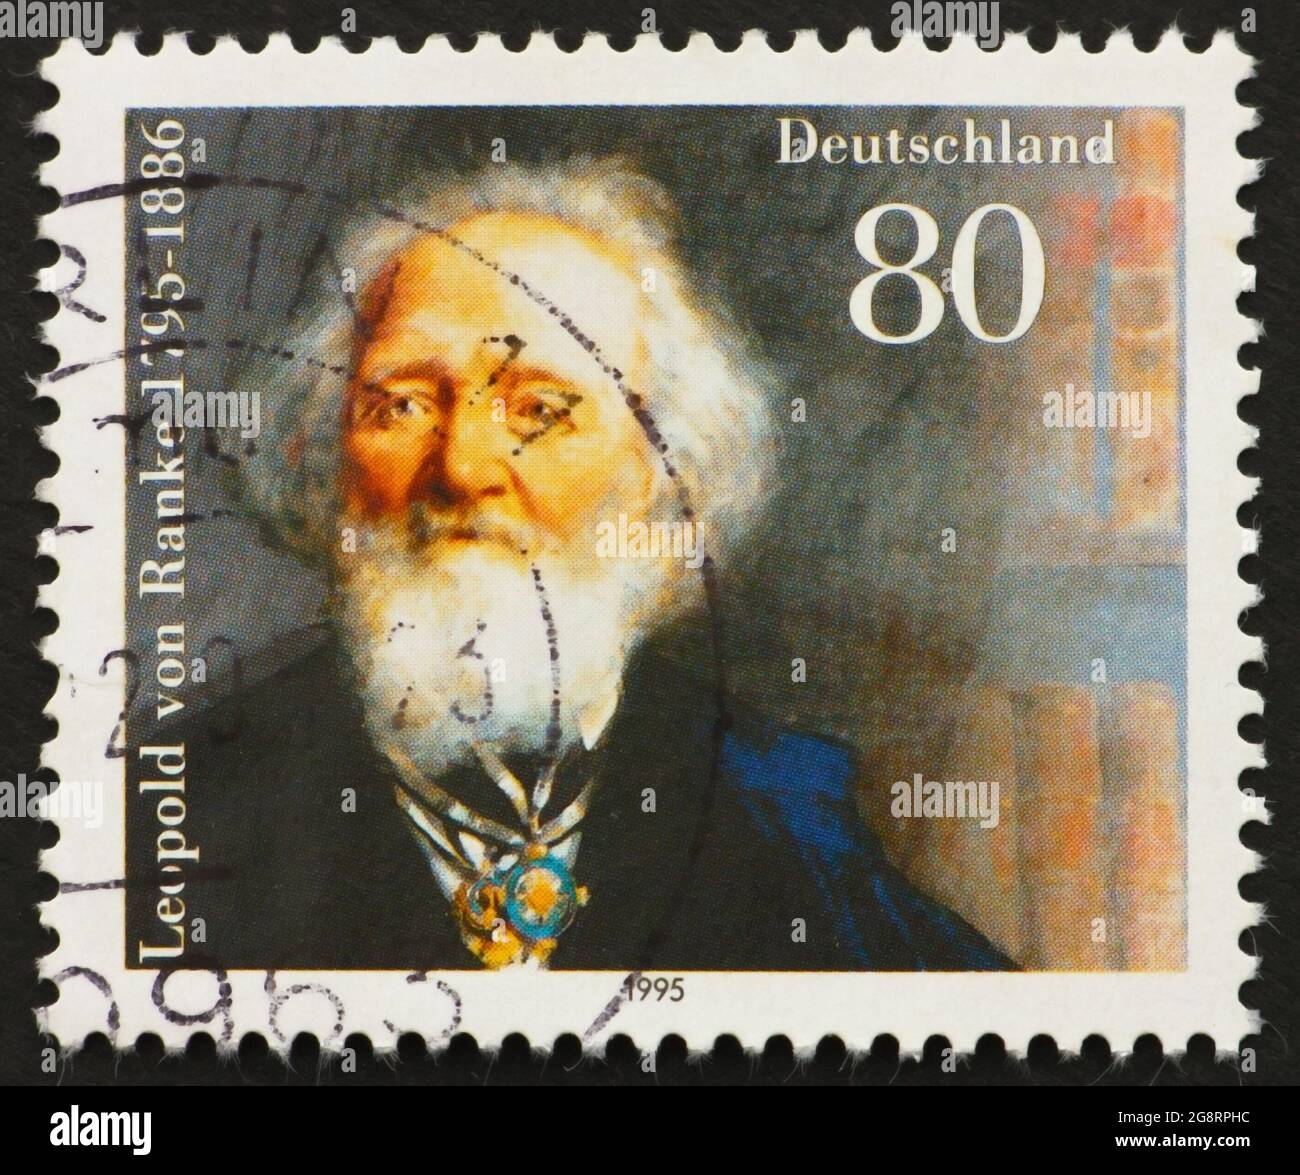 ALLEMAGNE - VERS 1995: Un timbre imprimé en Allemagne montre Leopold von Ranke, historien, vers 1995 Banque D'Images